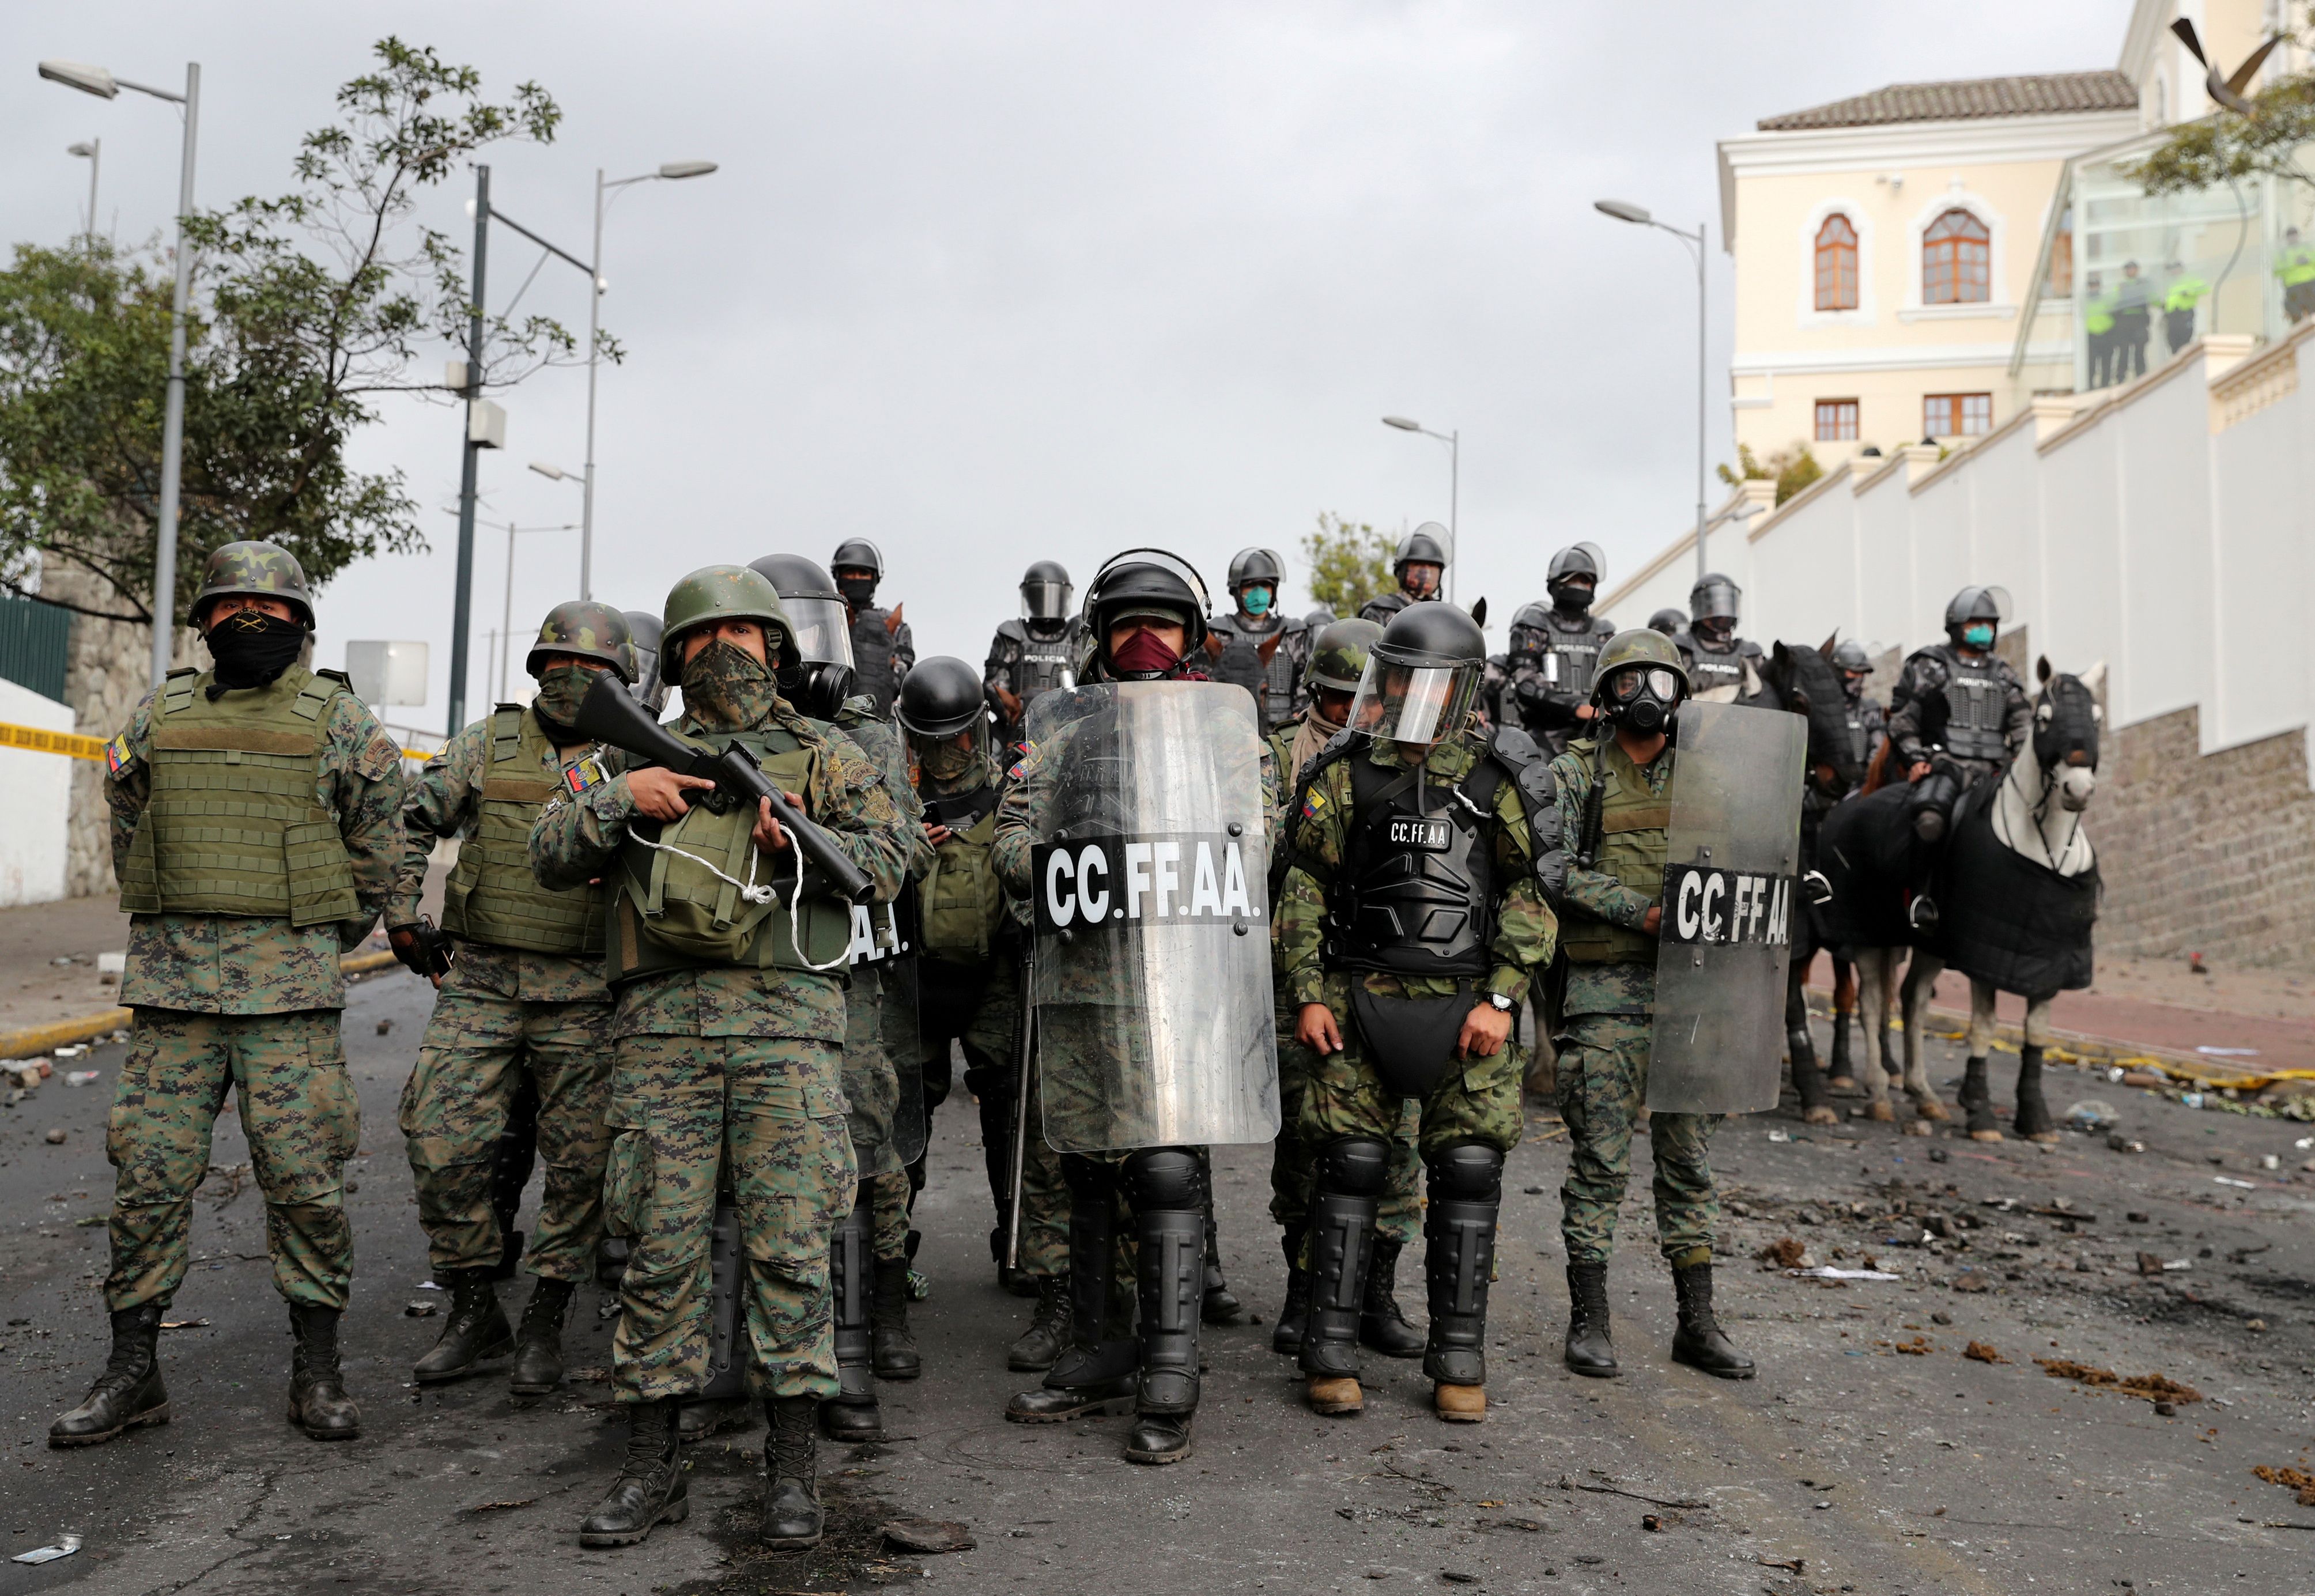 Las protestas en Ecuador dejaron más de mil detenidos por agentes policiales y militares.